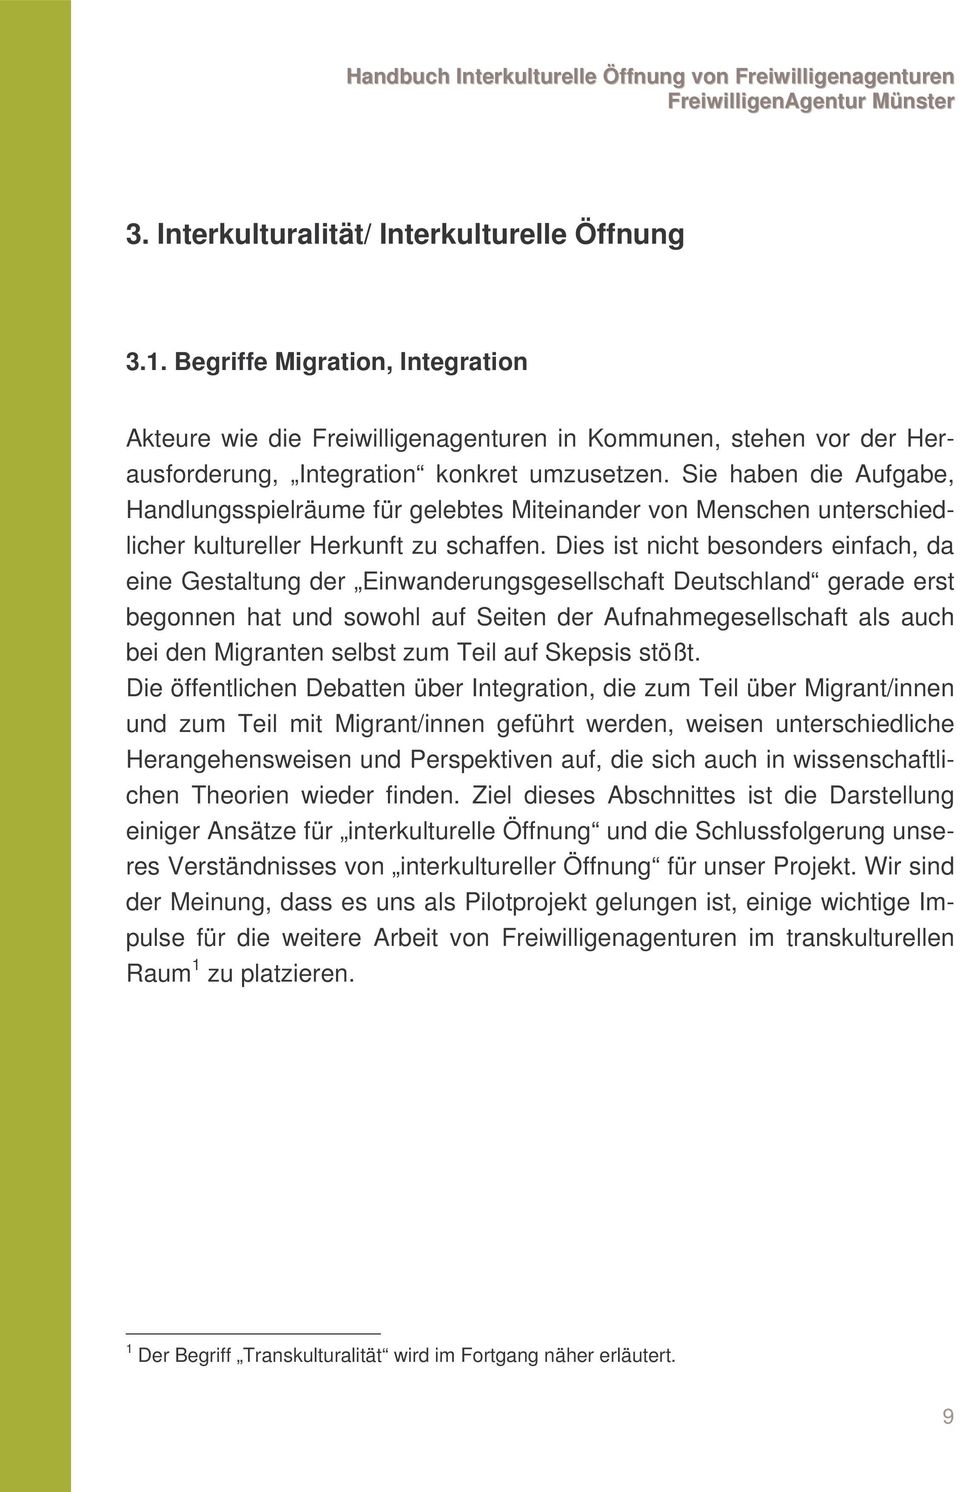 Dies ist nicht besonders einfach, da eine Gestaltung der Einwanderungsgesellschaft Deutschland gerade erst begonnen hat und sowohl auf Seiten der Aufnahmegesellschaft als auch bei den Migranten